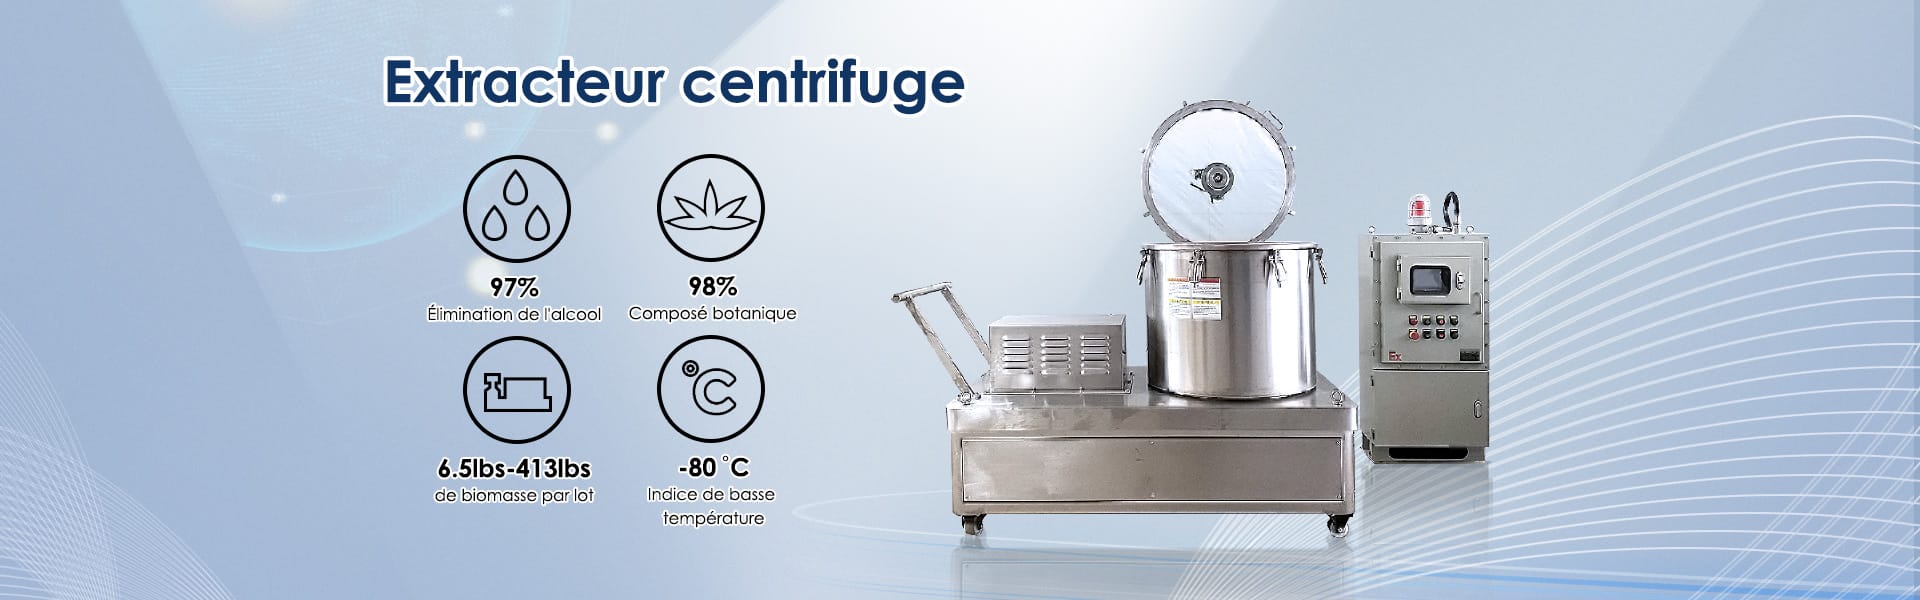 bannière d'extracteur centrifuge